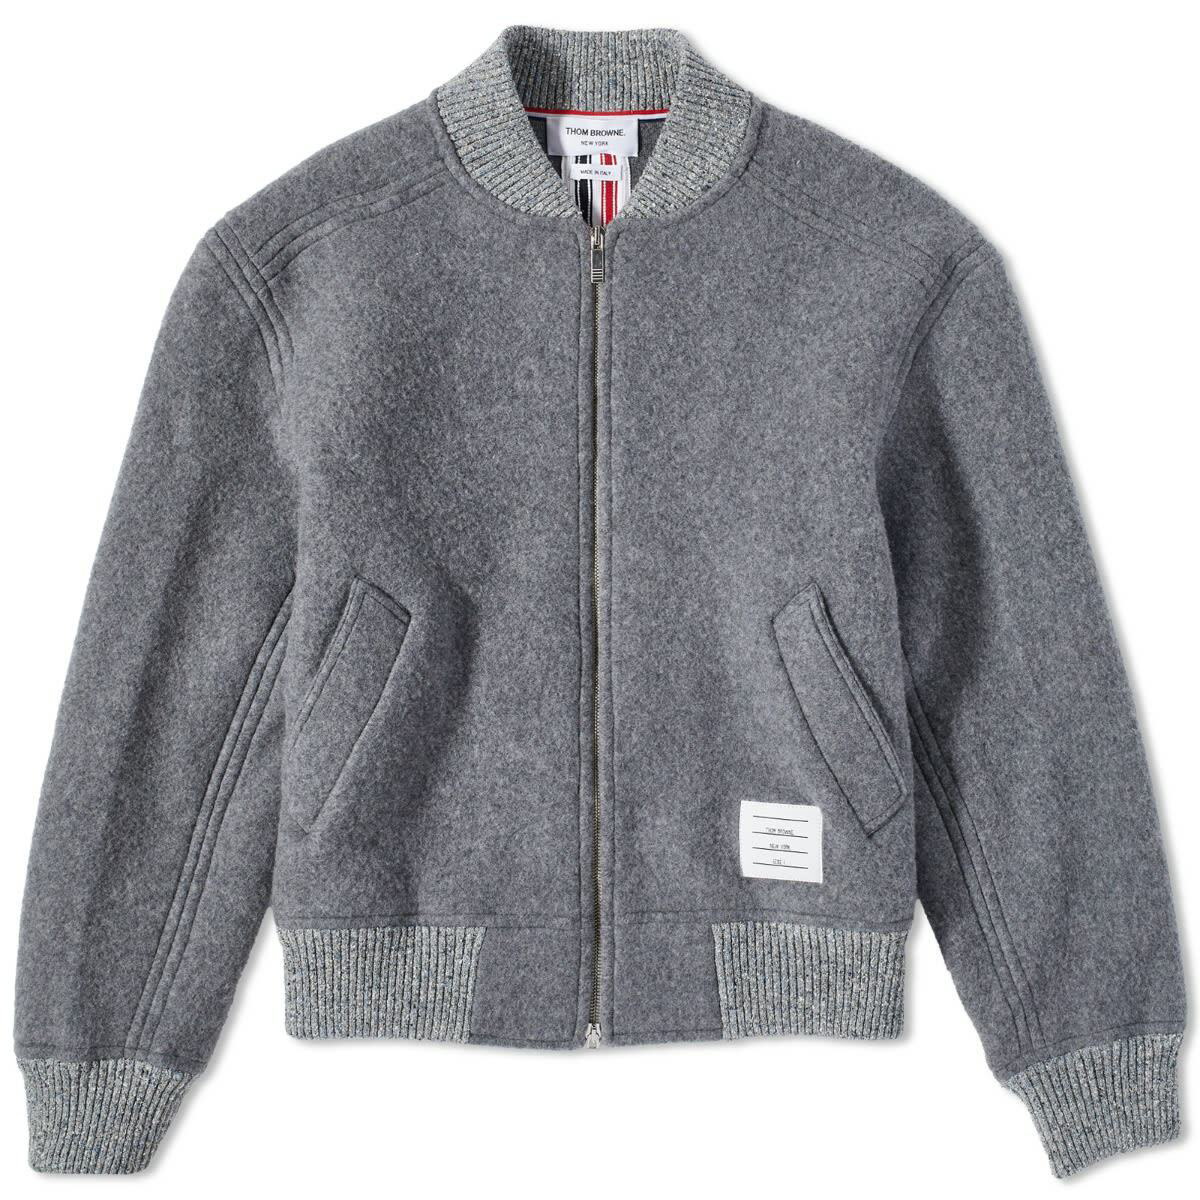 Thom Browne Men's Tape Wool Fleece Bomber Jacket in Light Grey Thom Browne